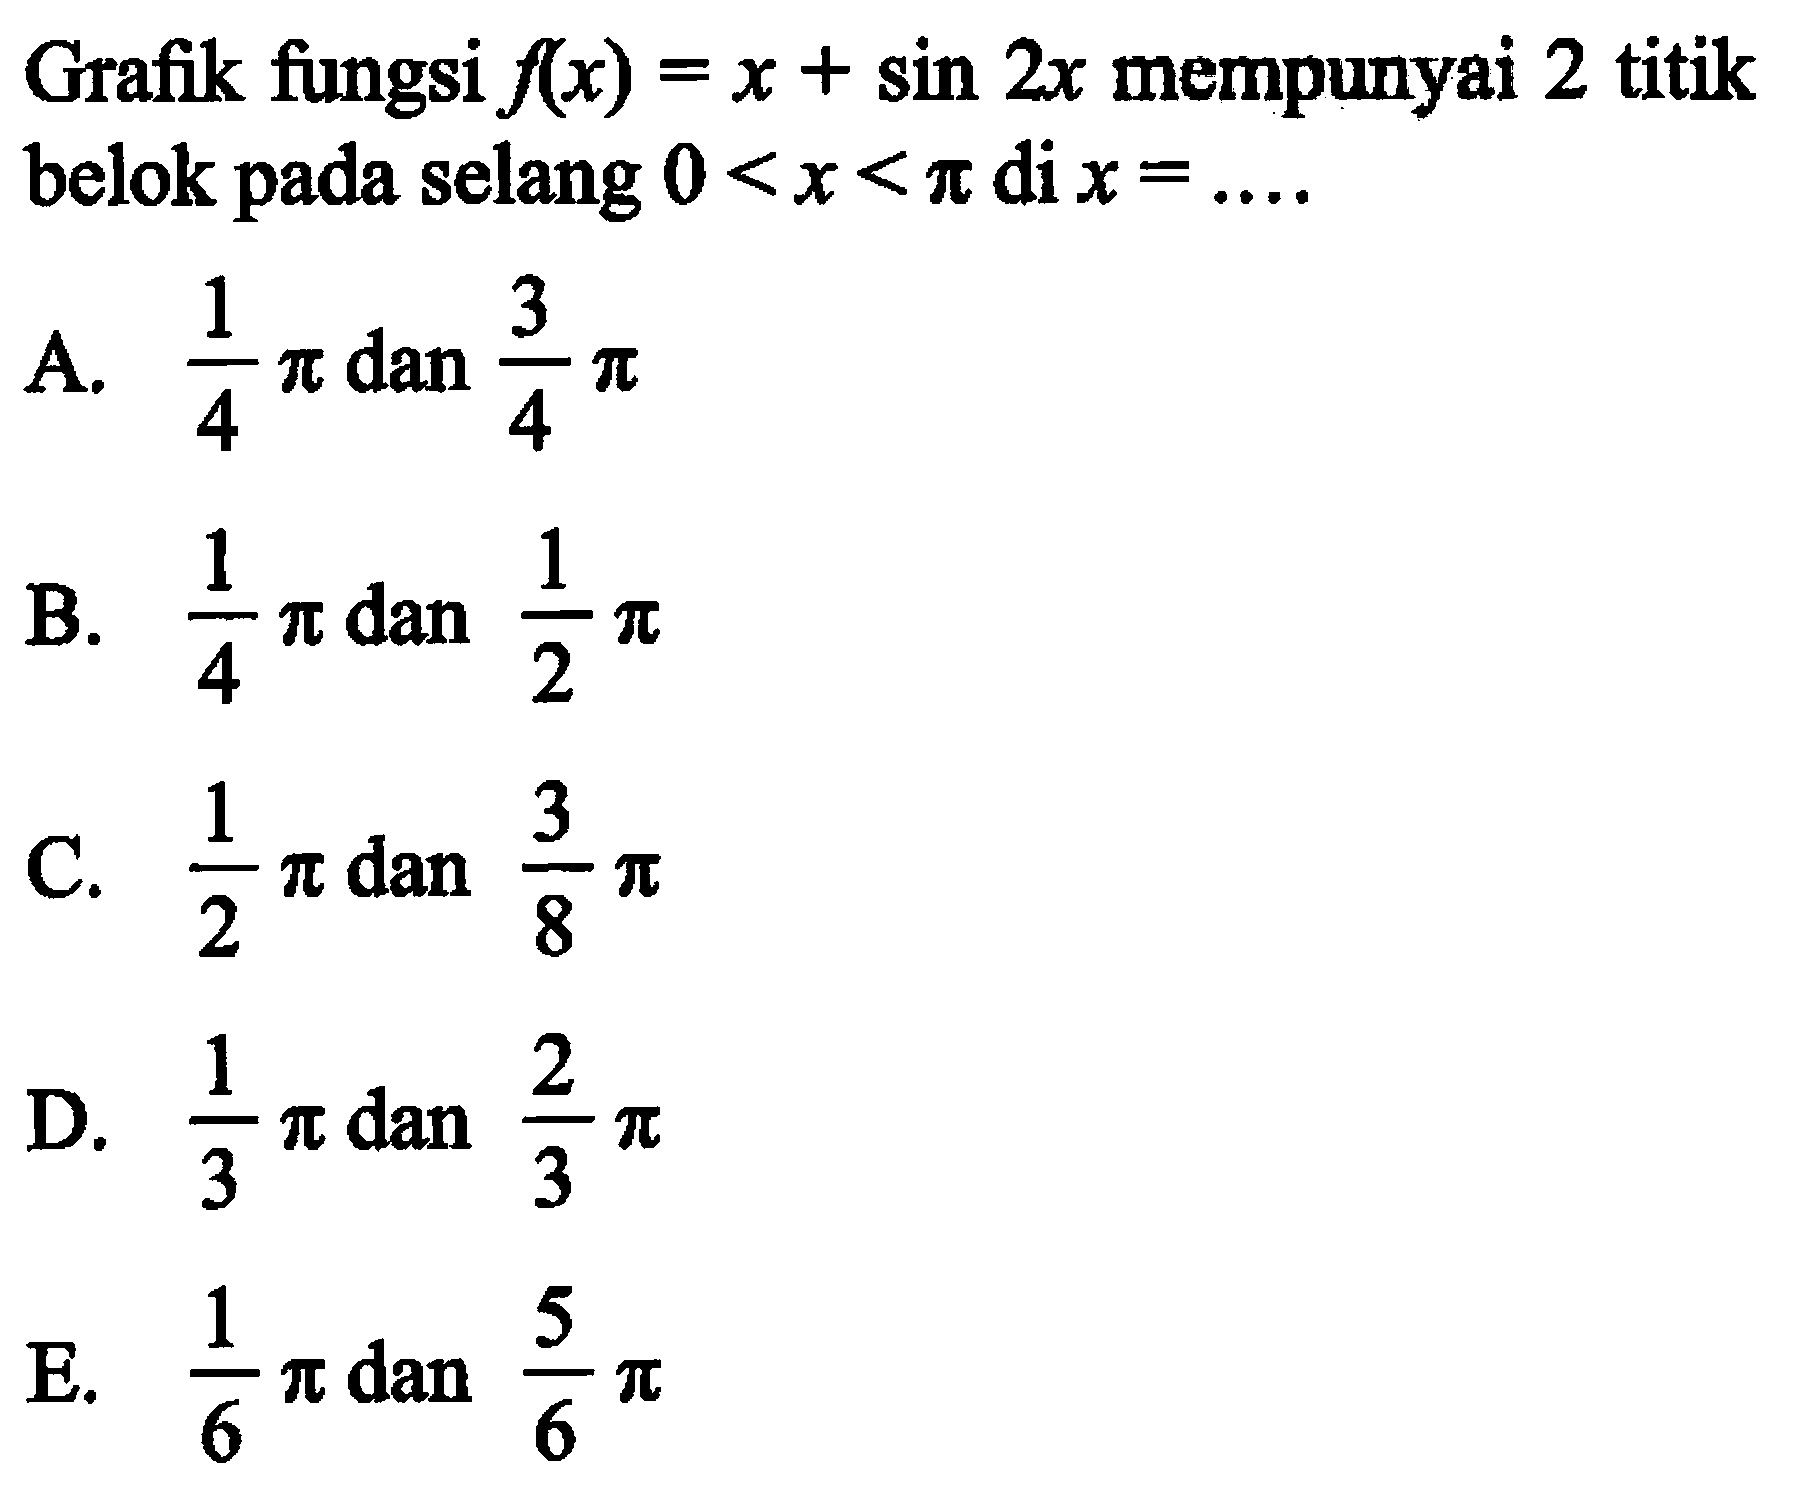 Grafik fungsi f(x)=x+sin 2x mempunyai 2 titik belok pada selang 0<x<pi di x=... .